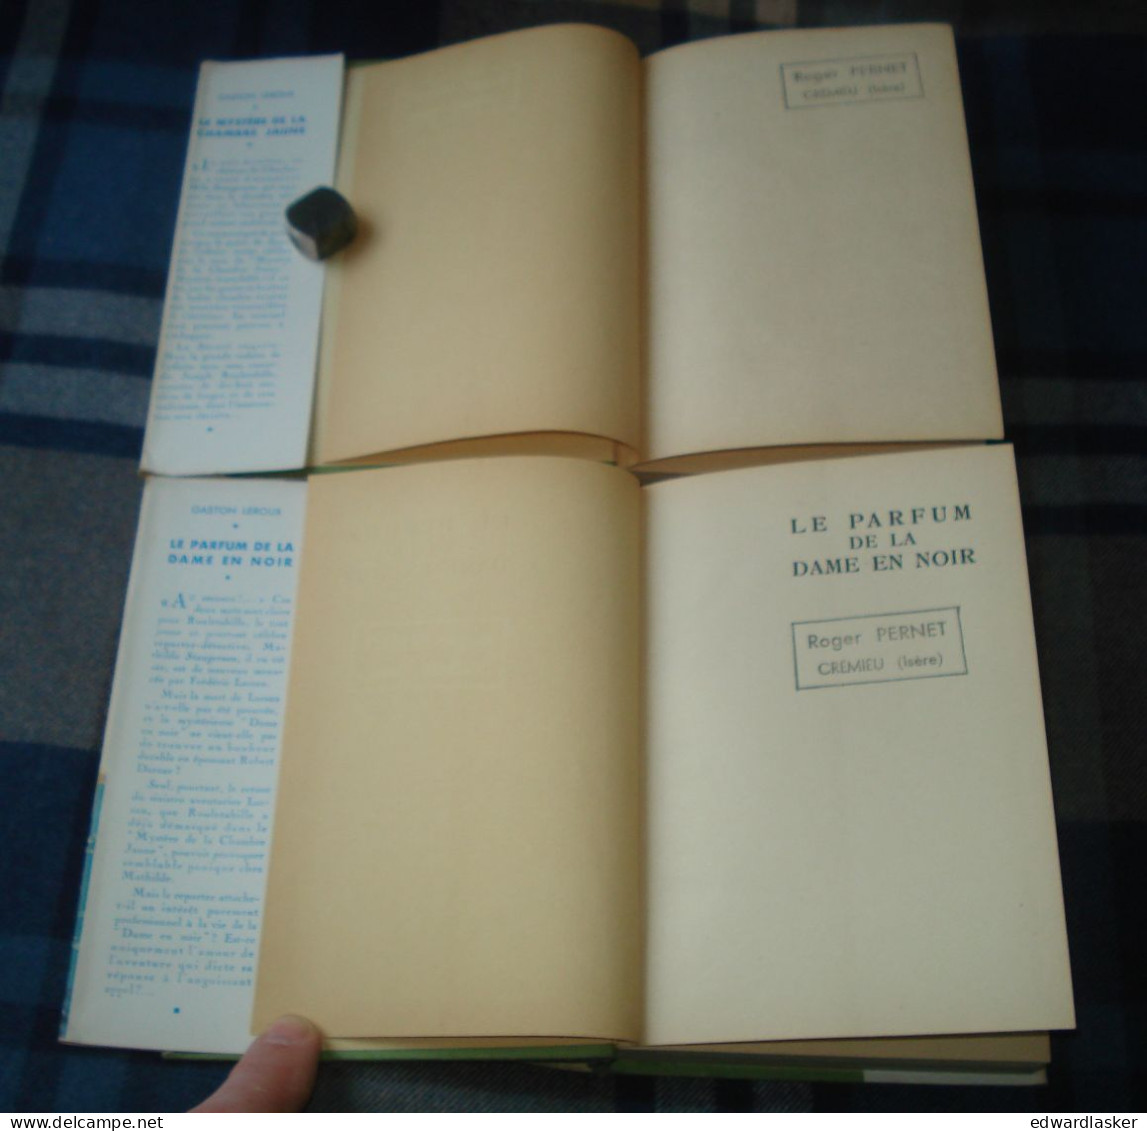 BIBLIOTHEQUE VERTE : Mystère De La Chambre Jaune + Parfum De La Dame En Noir /Gaston Leroux - Jaquette 1953 - Reschofsky - Bibliotheque Verte